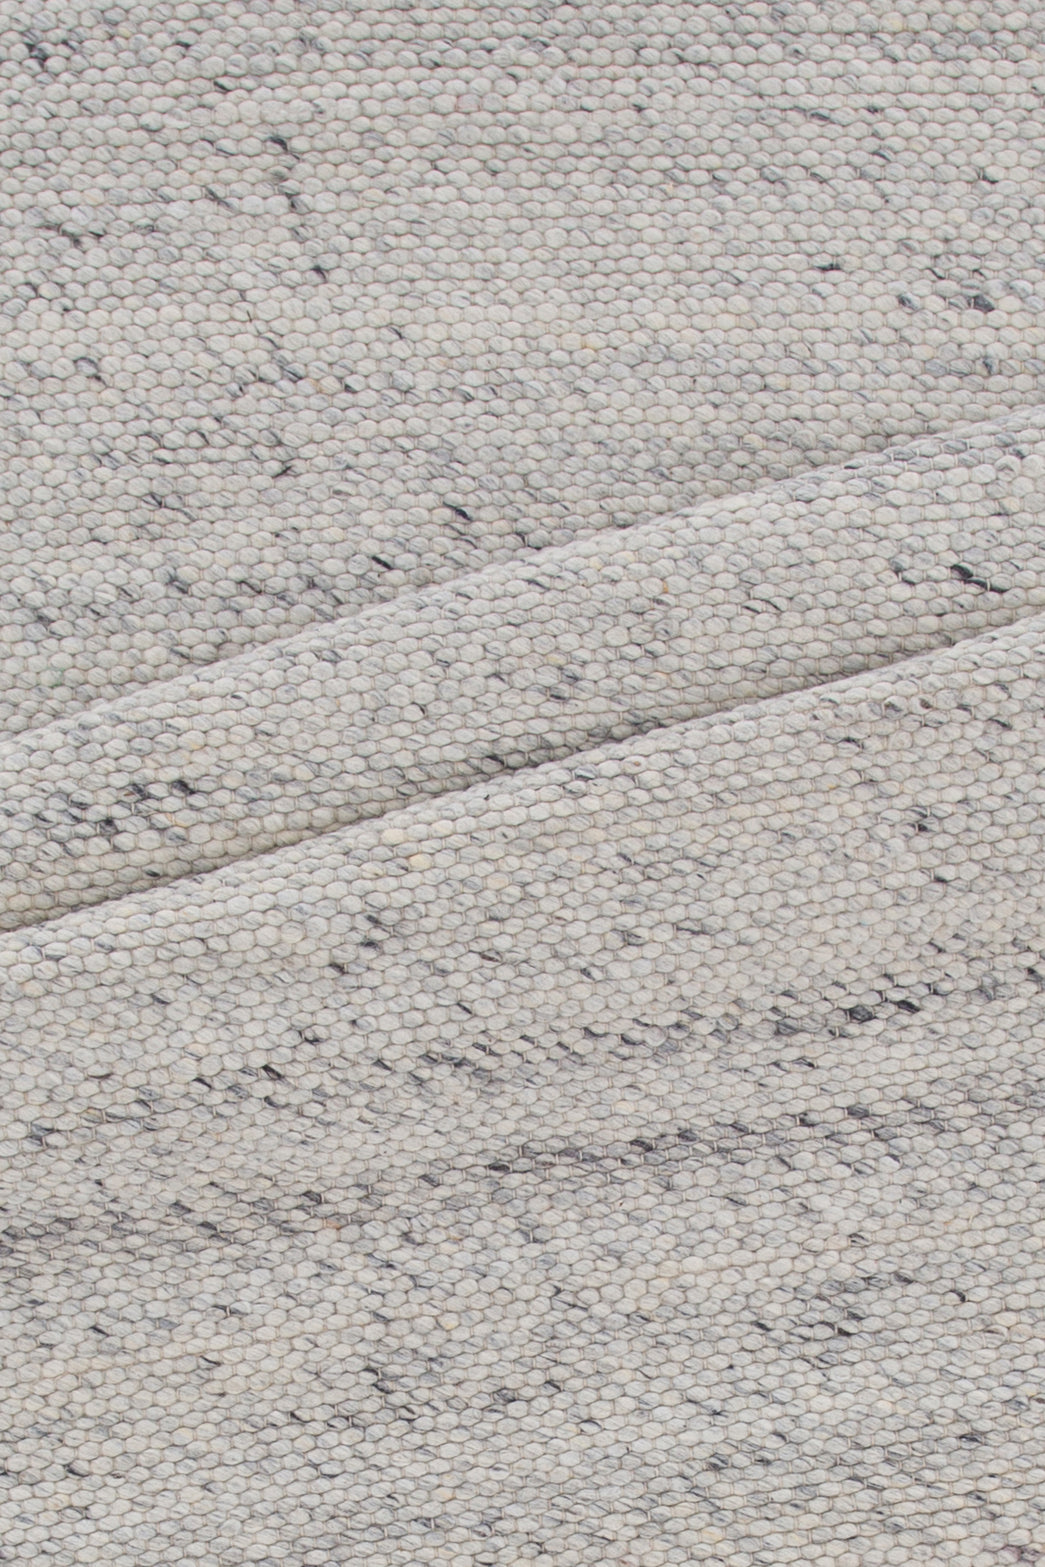 Venture-Design | Teppich aus Ganga-Wolle - 300*200cm - Elfenbein